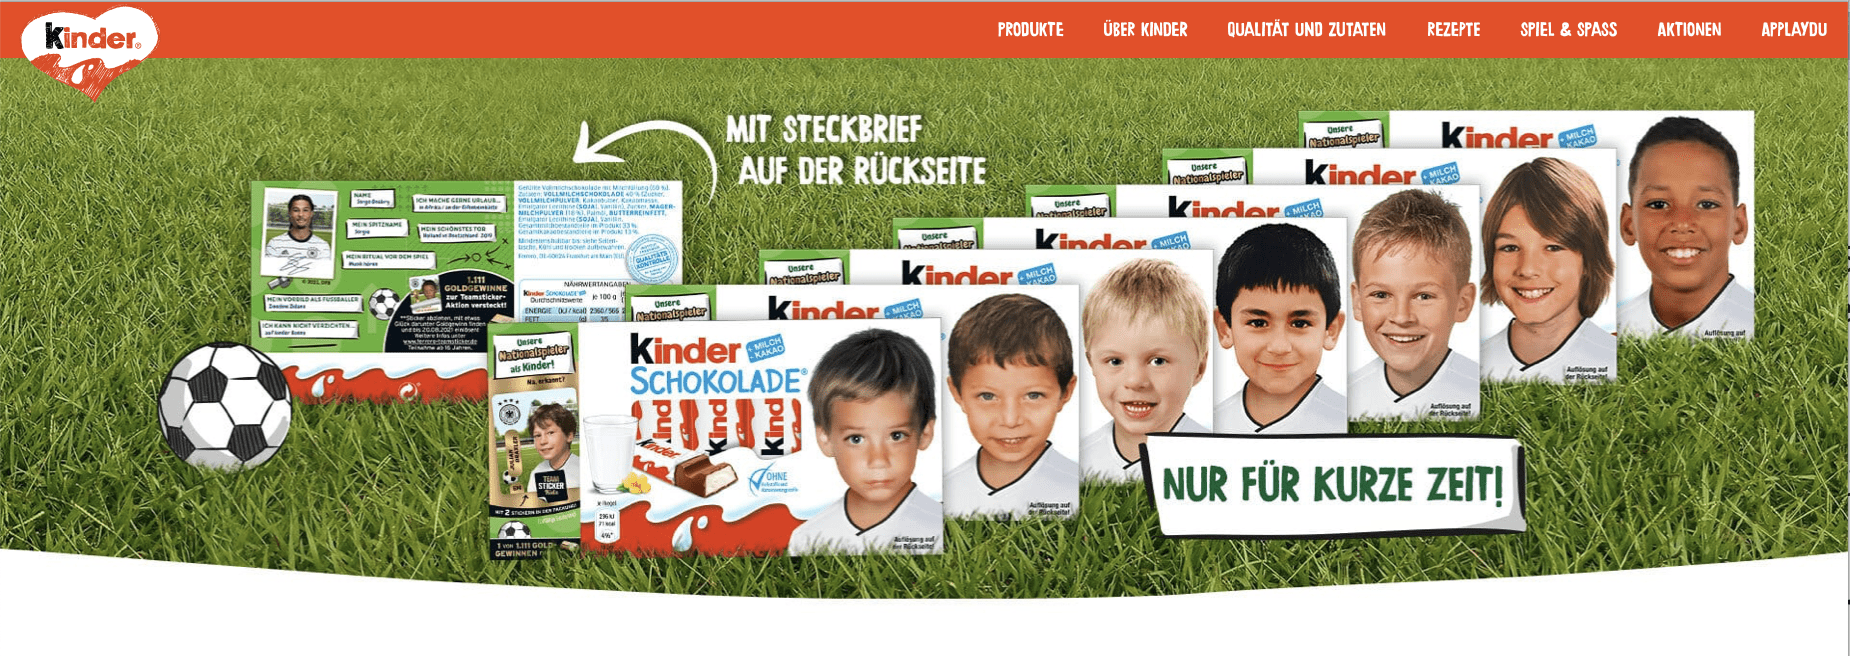 Gewinnspiel-Cases FMCG Süßwaren & Snacks Kinder Schokolade